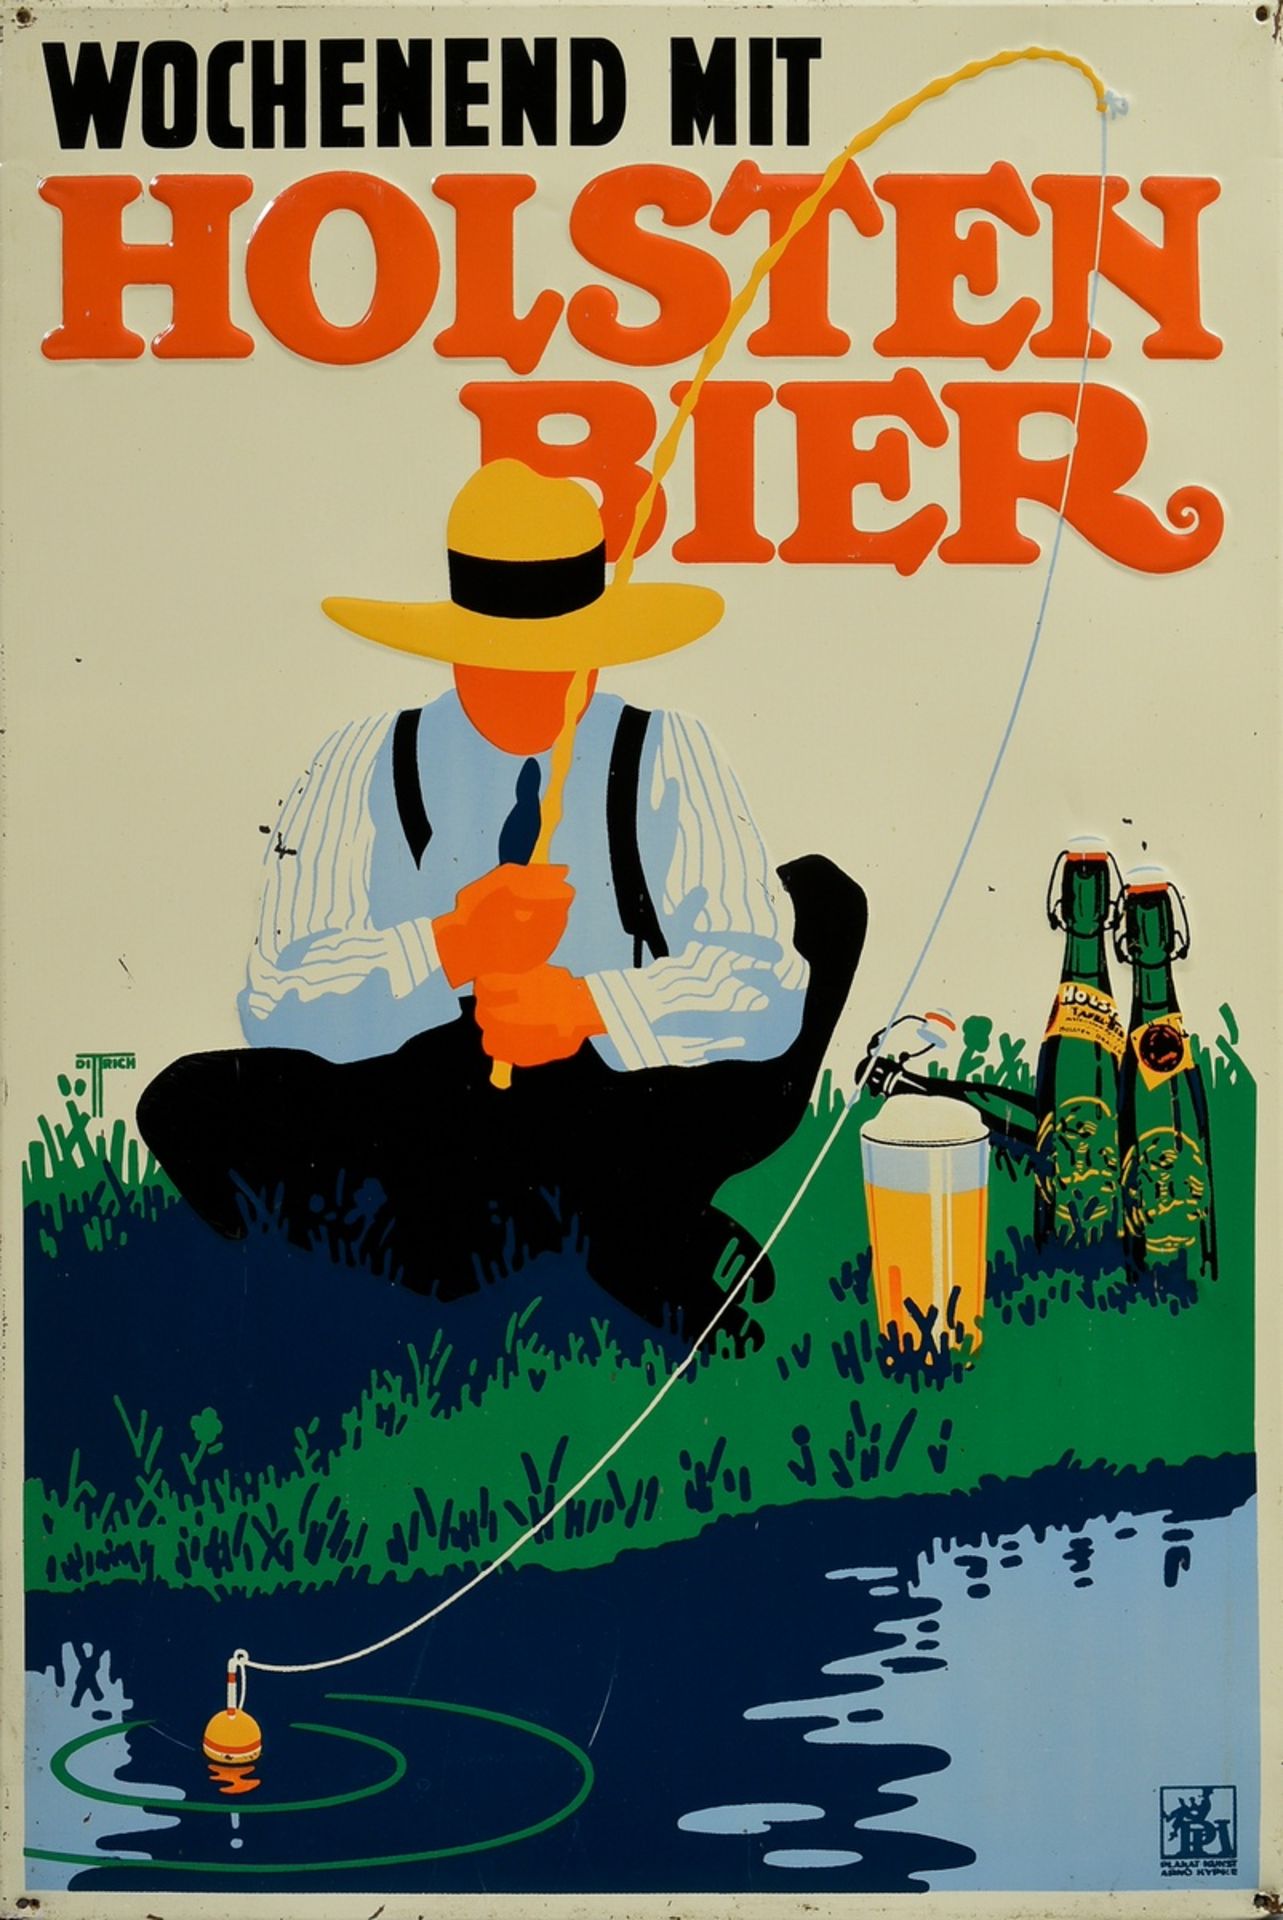 Advertising sign "Wochenend mit Holsten Bier" (Weekend with Holsten Beer), design: "Dittrich für di